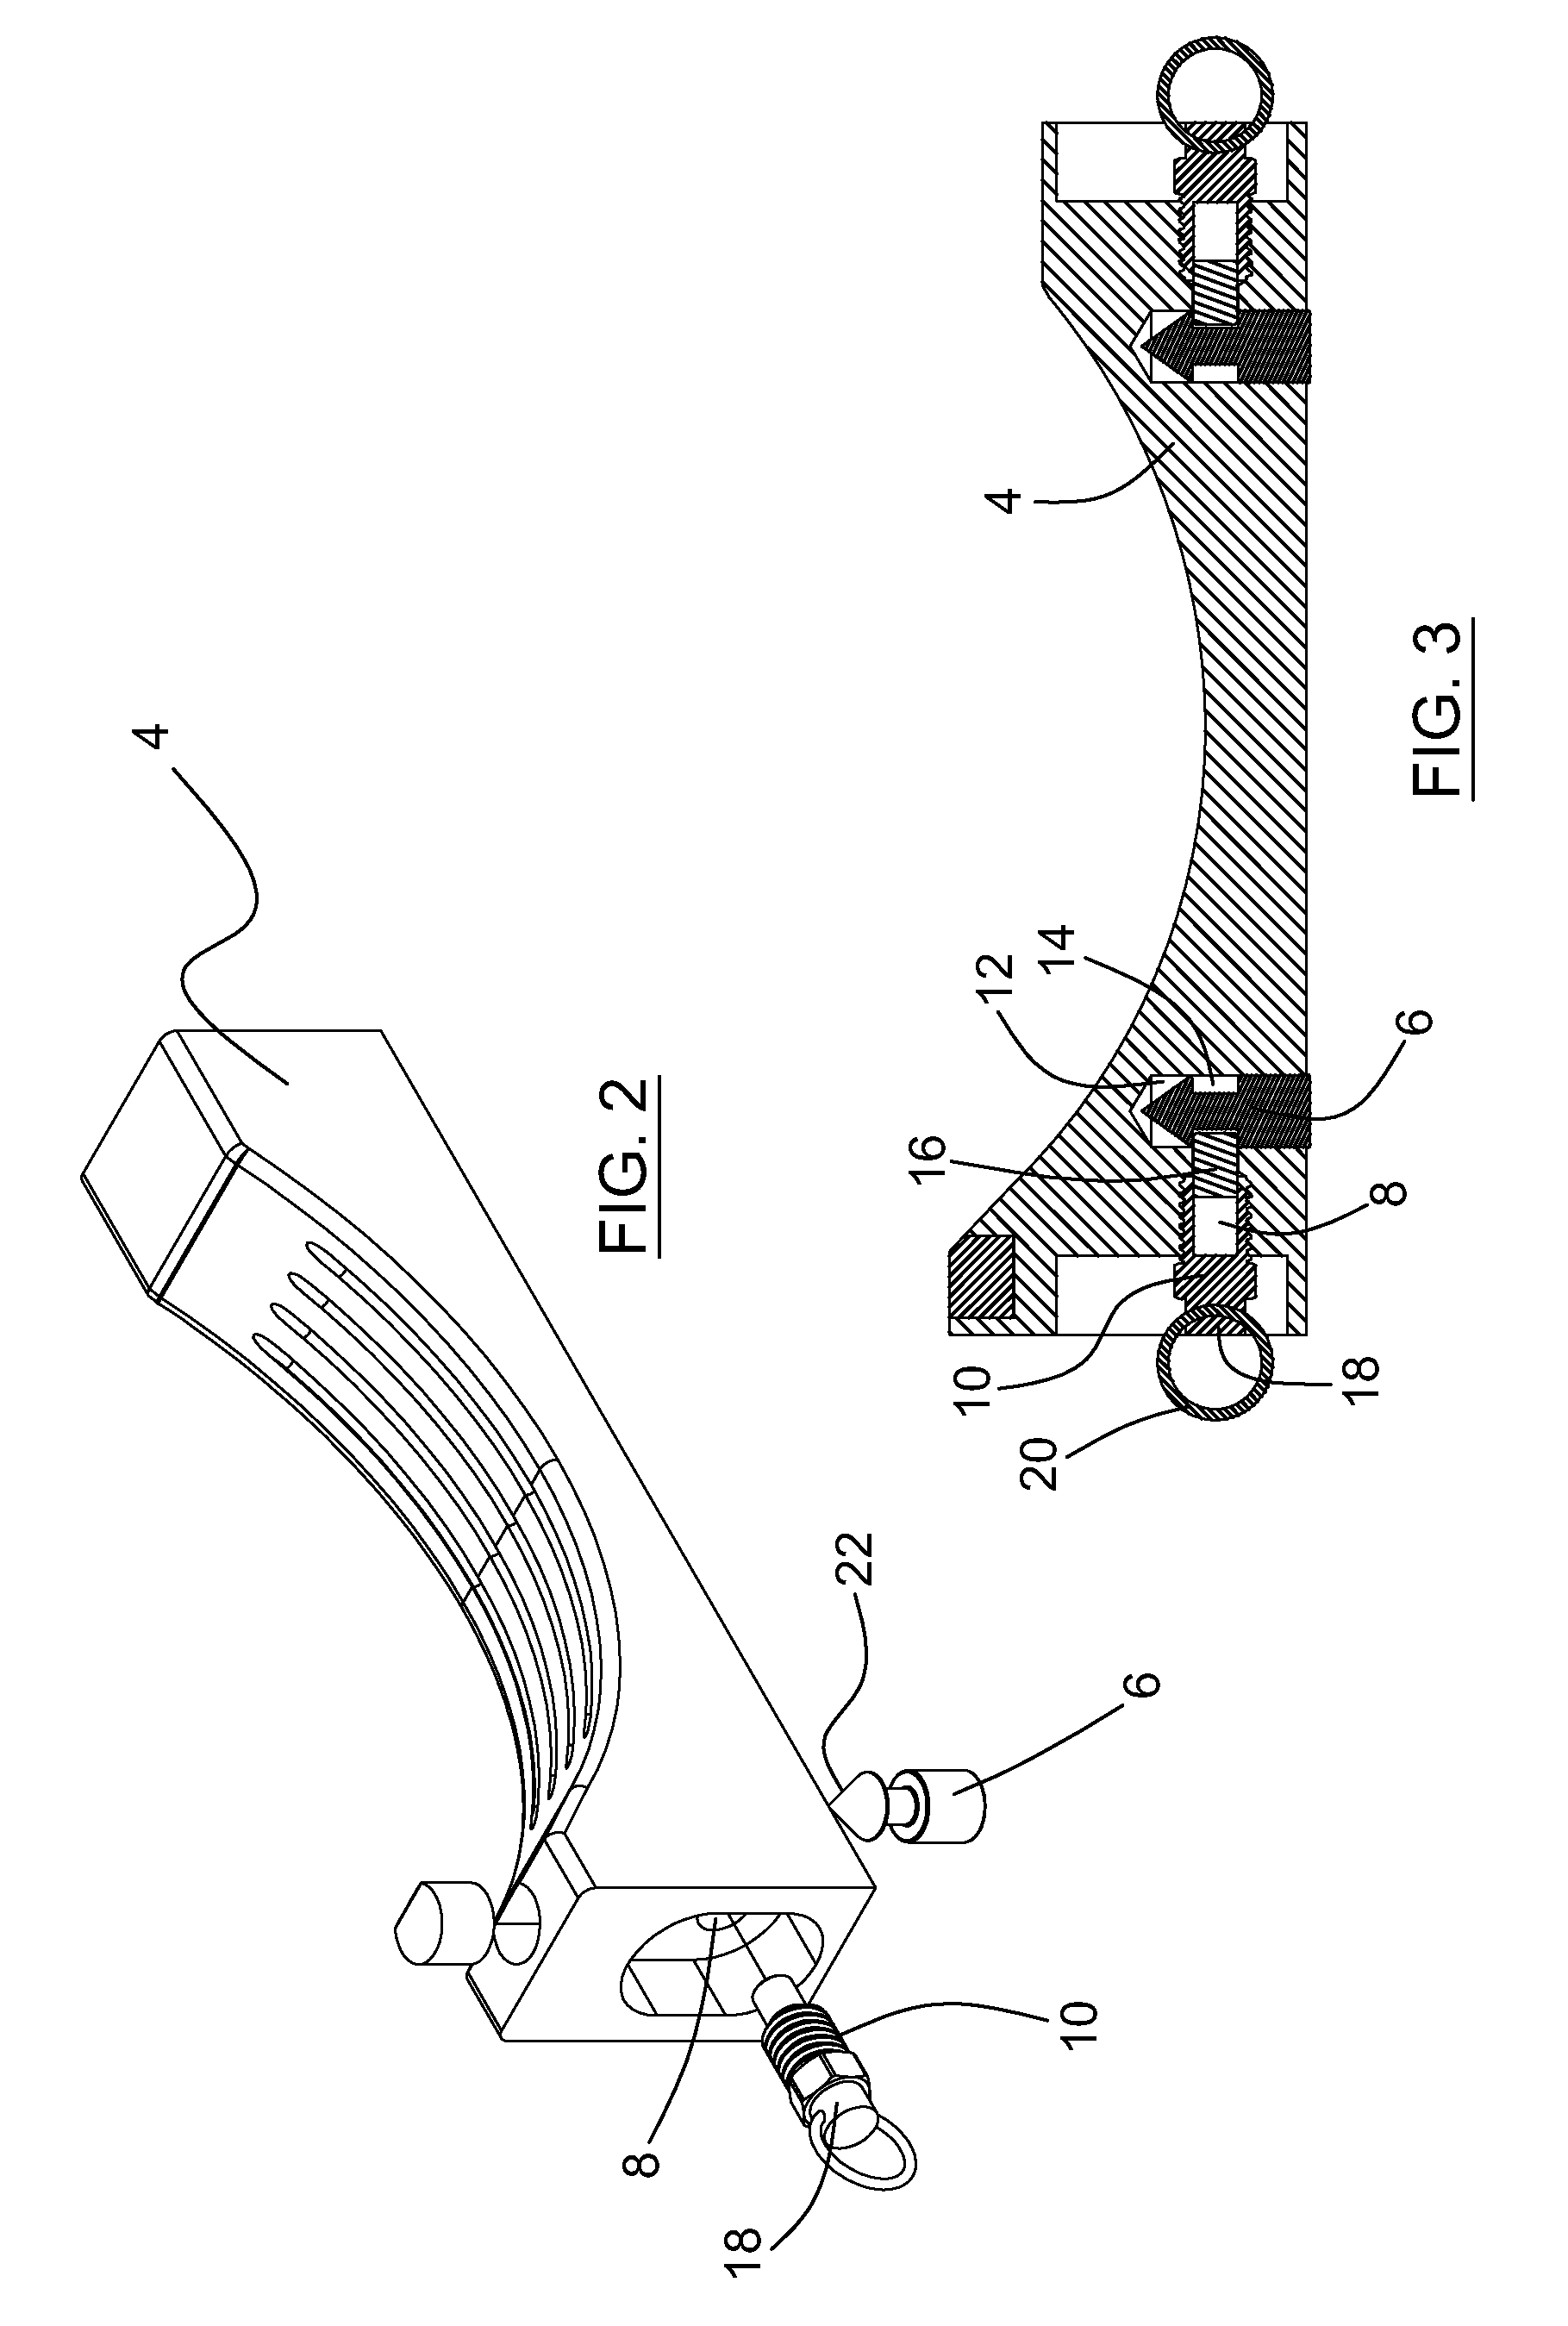 Modular conveyor belt